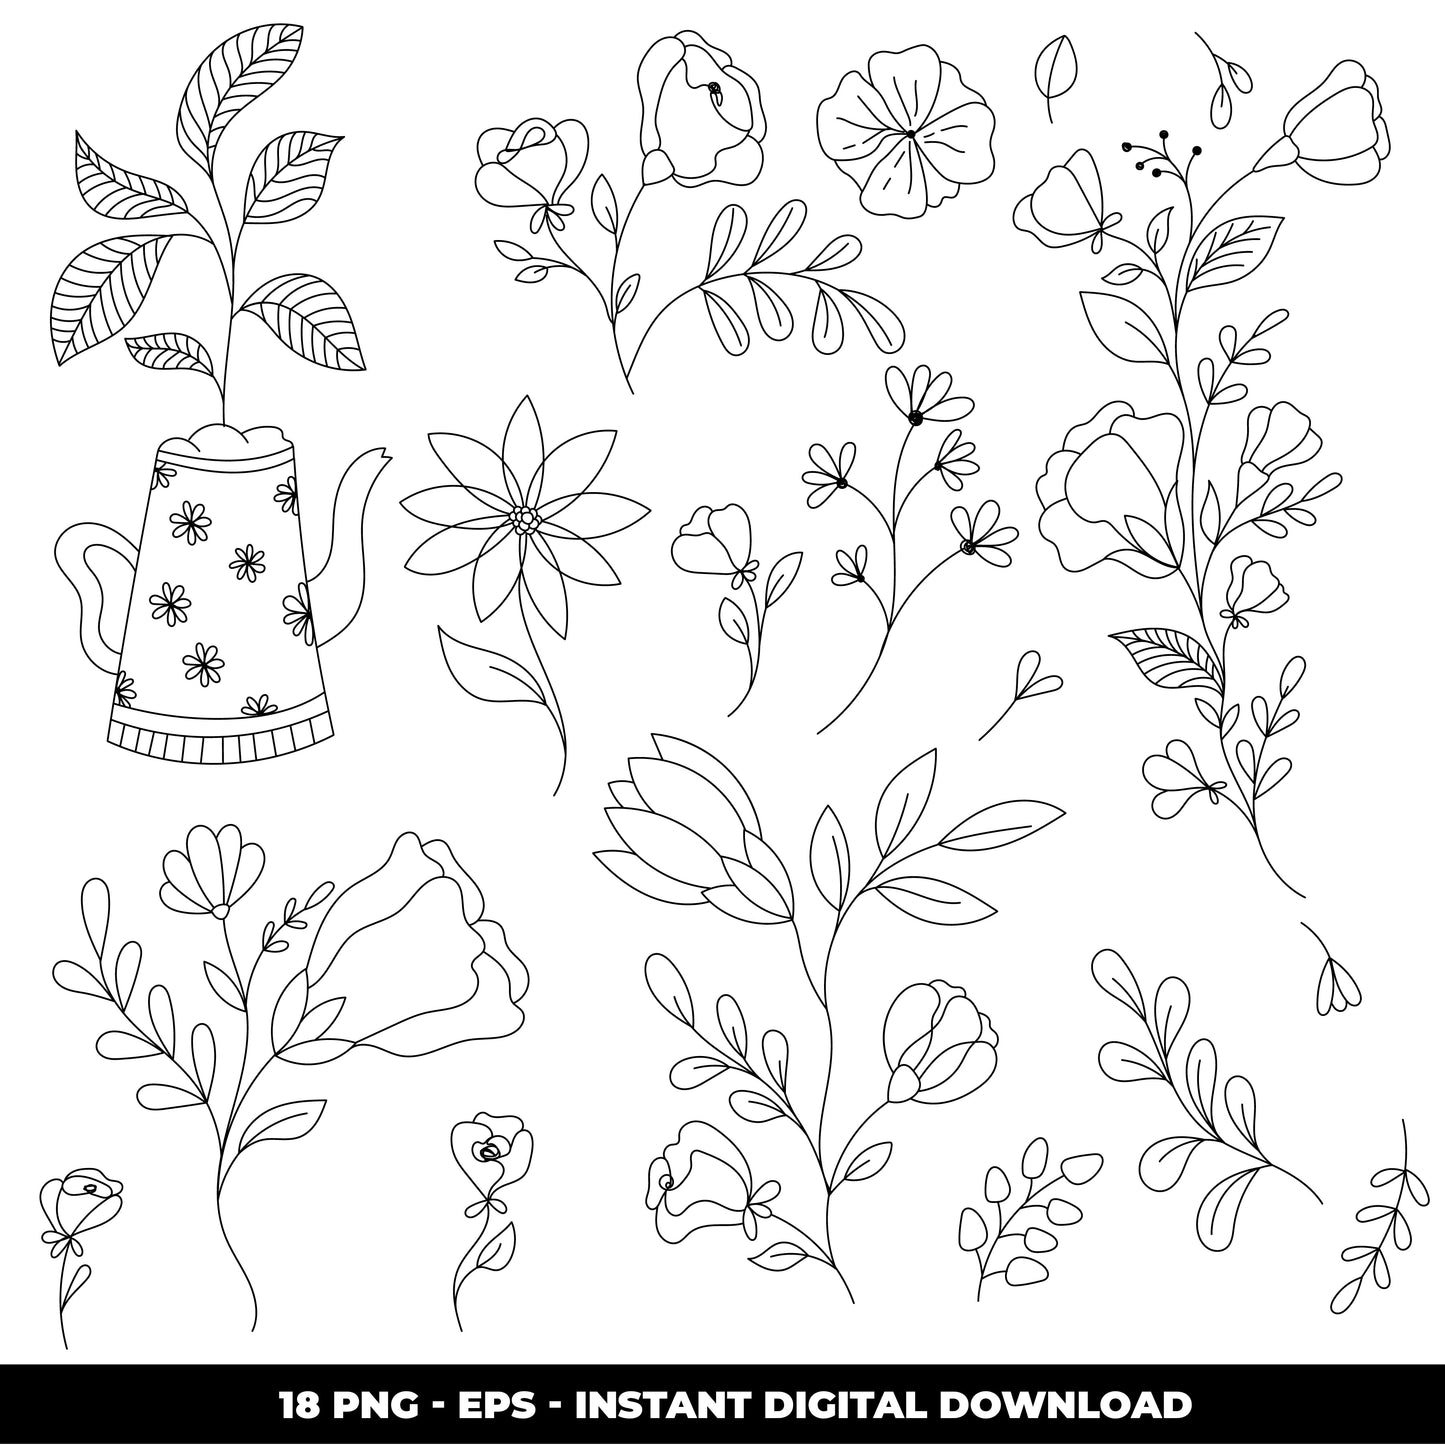 COD1213  Flowers doodle cliparts, Succulent SVG, CACTUS SVG, House Plants Clipart, Terrarium Cactus Art, Cactus Doodles Clipart, Digital Stamp